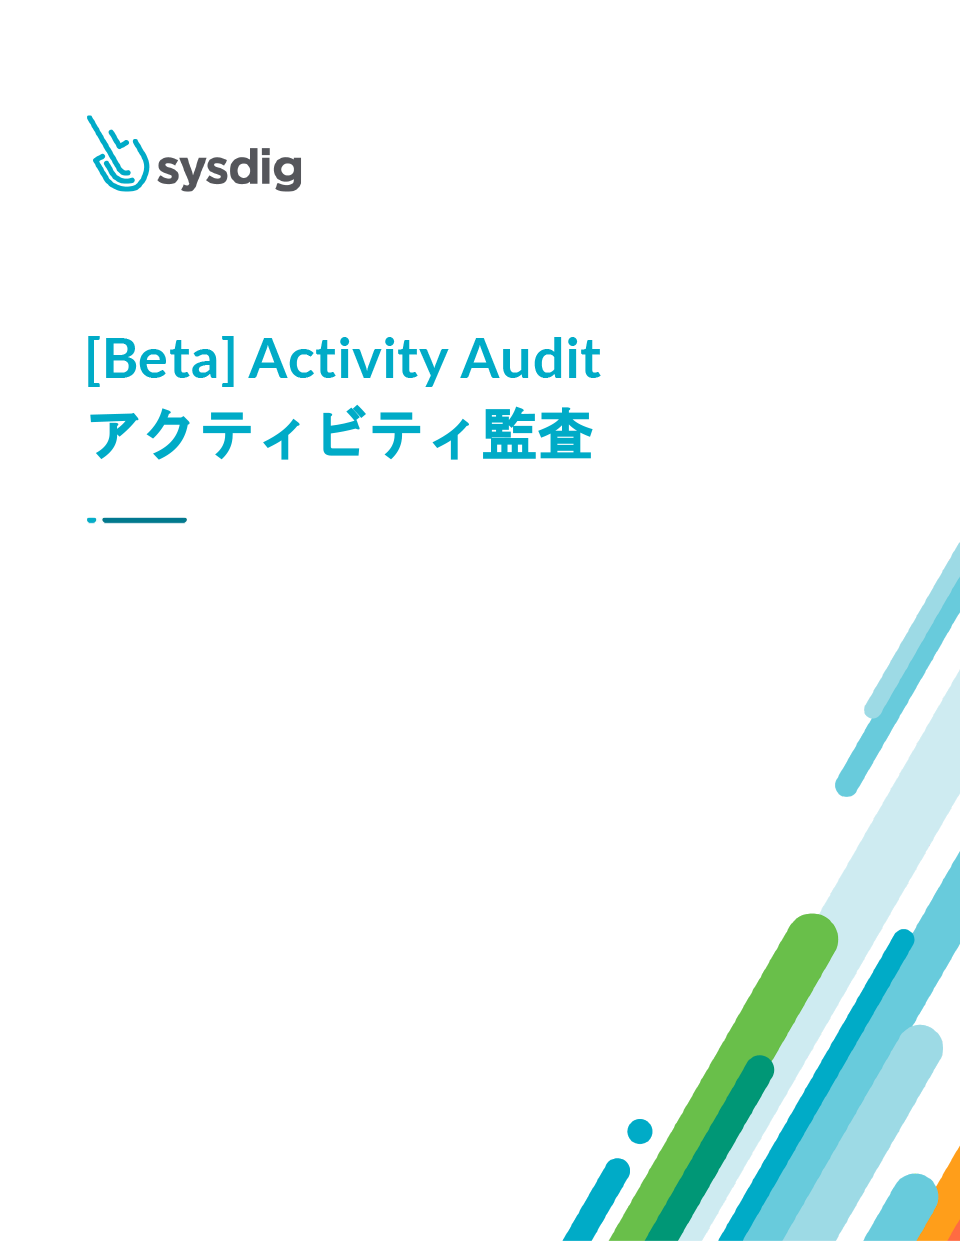 「【Beta】Activity Audit」を公開いたしました